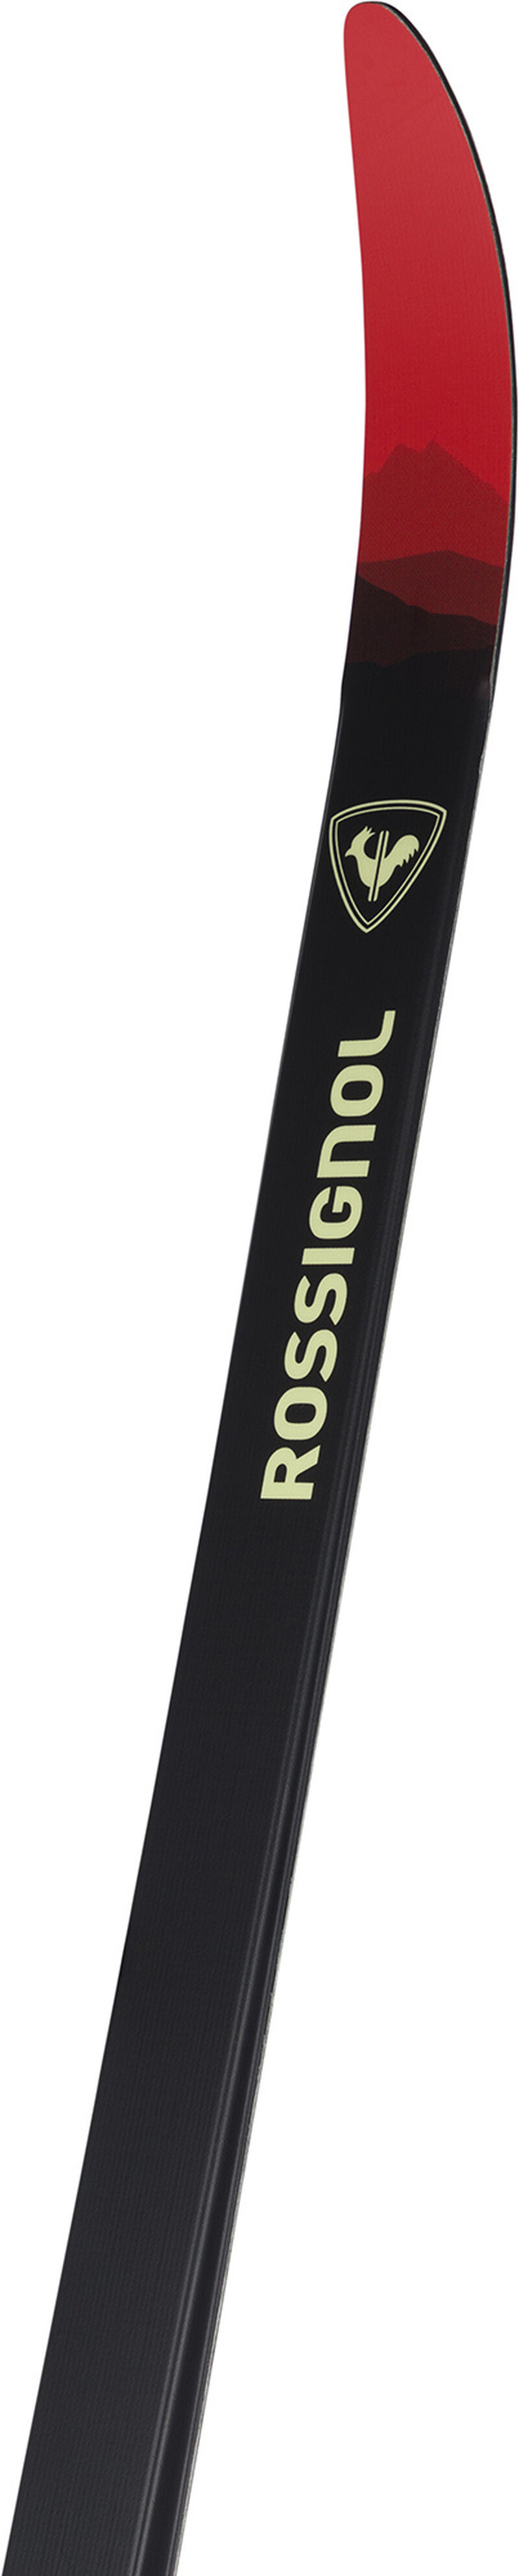 Rossignol Unisex Nordic Touring Skis Xt Venture Wxls multicolor